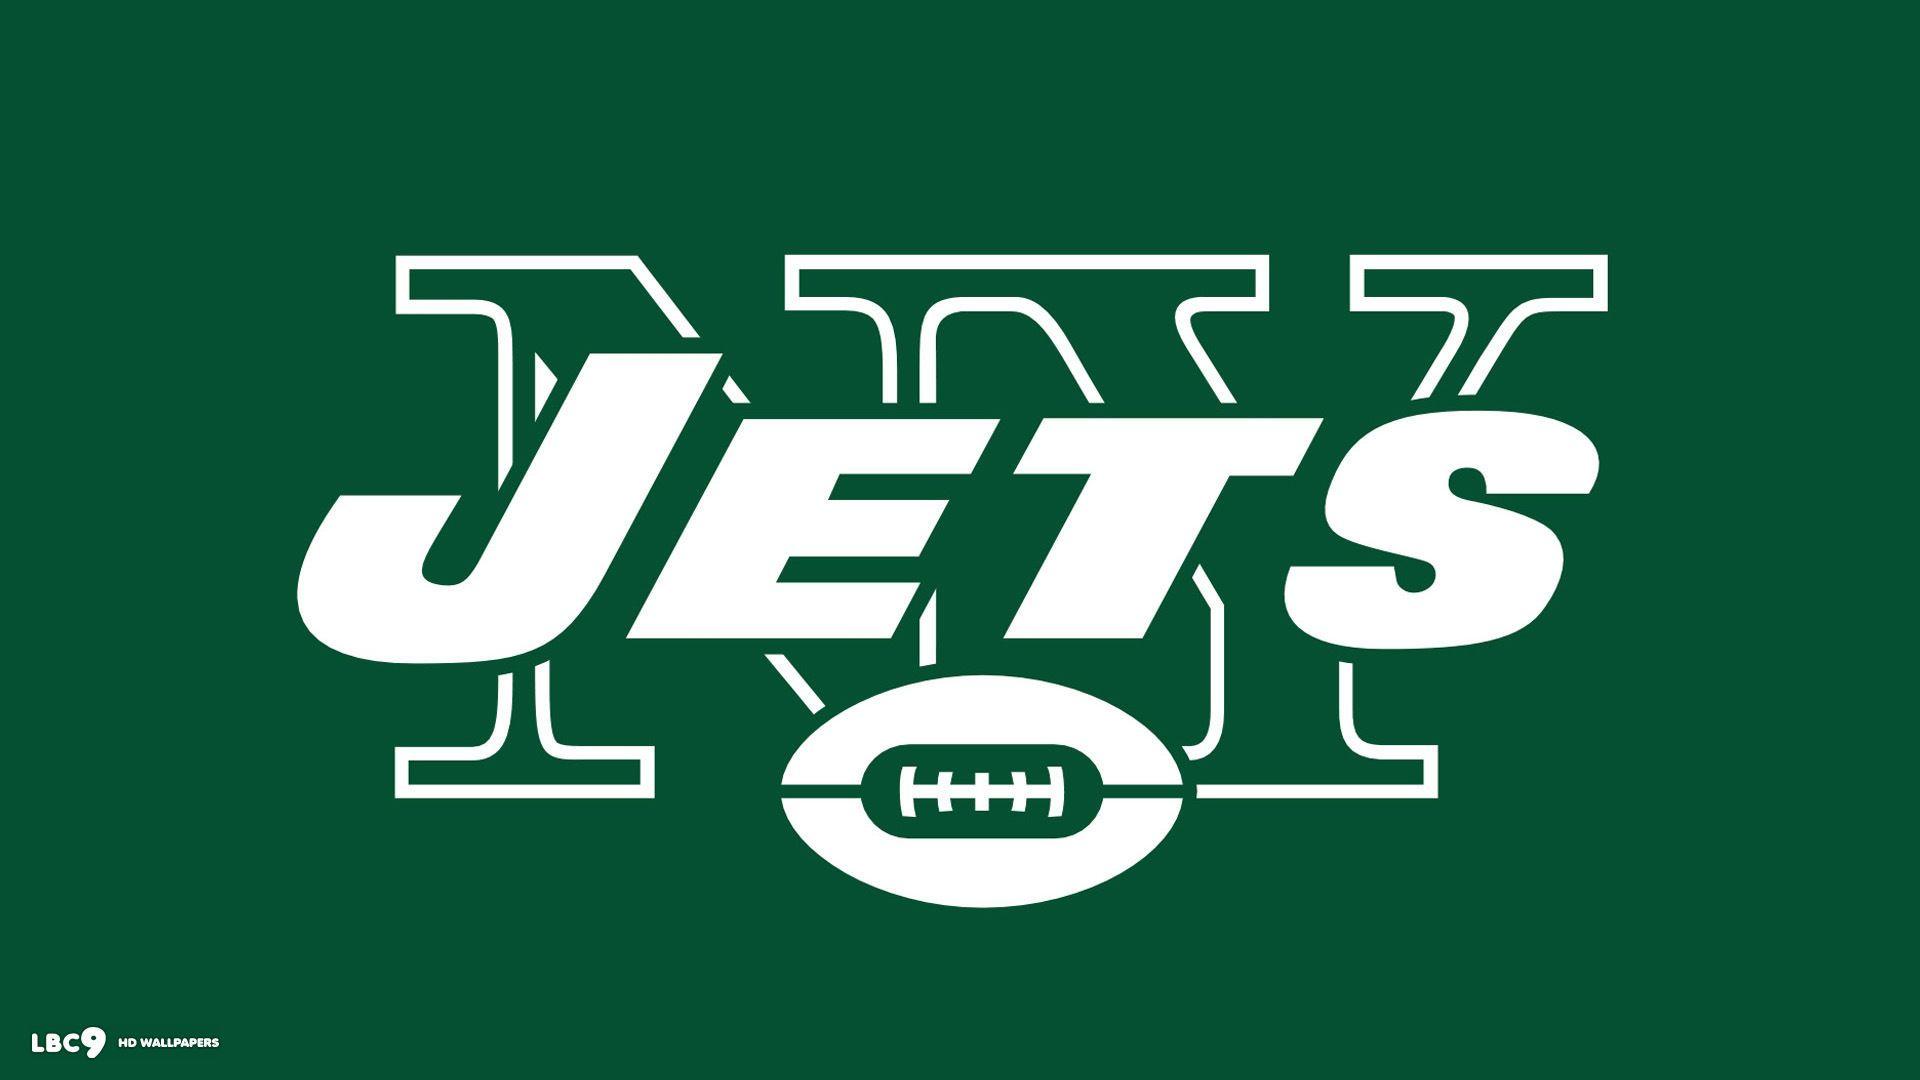 New York Jets wallpapers HD backgrounds download desktop • iPhones